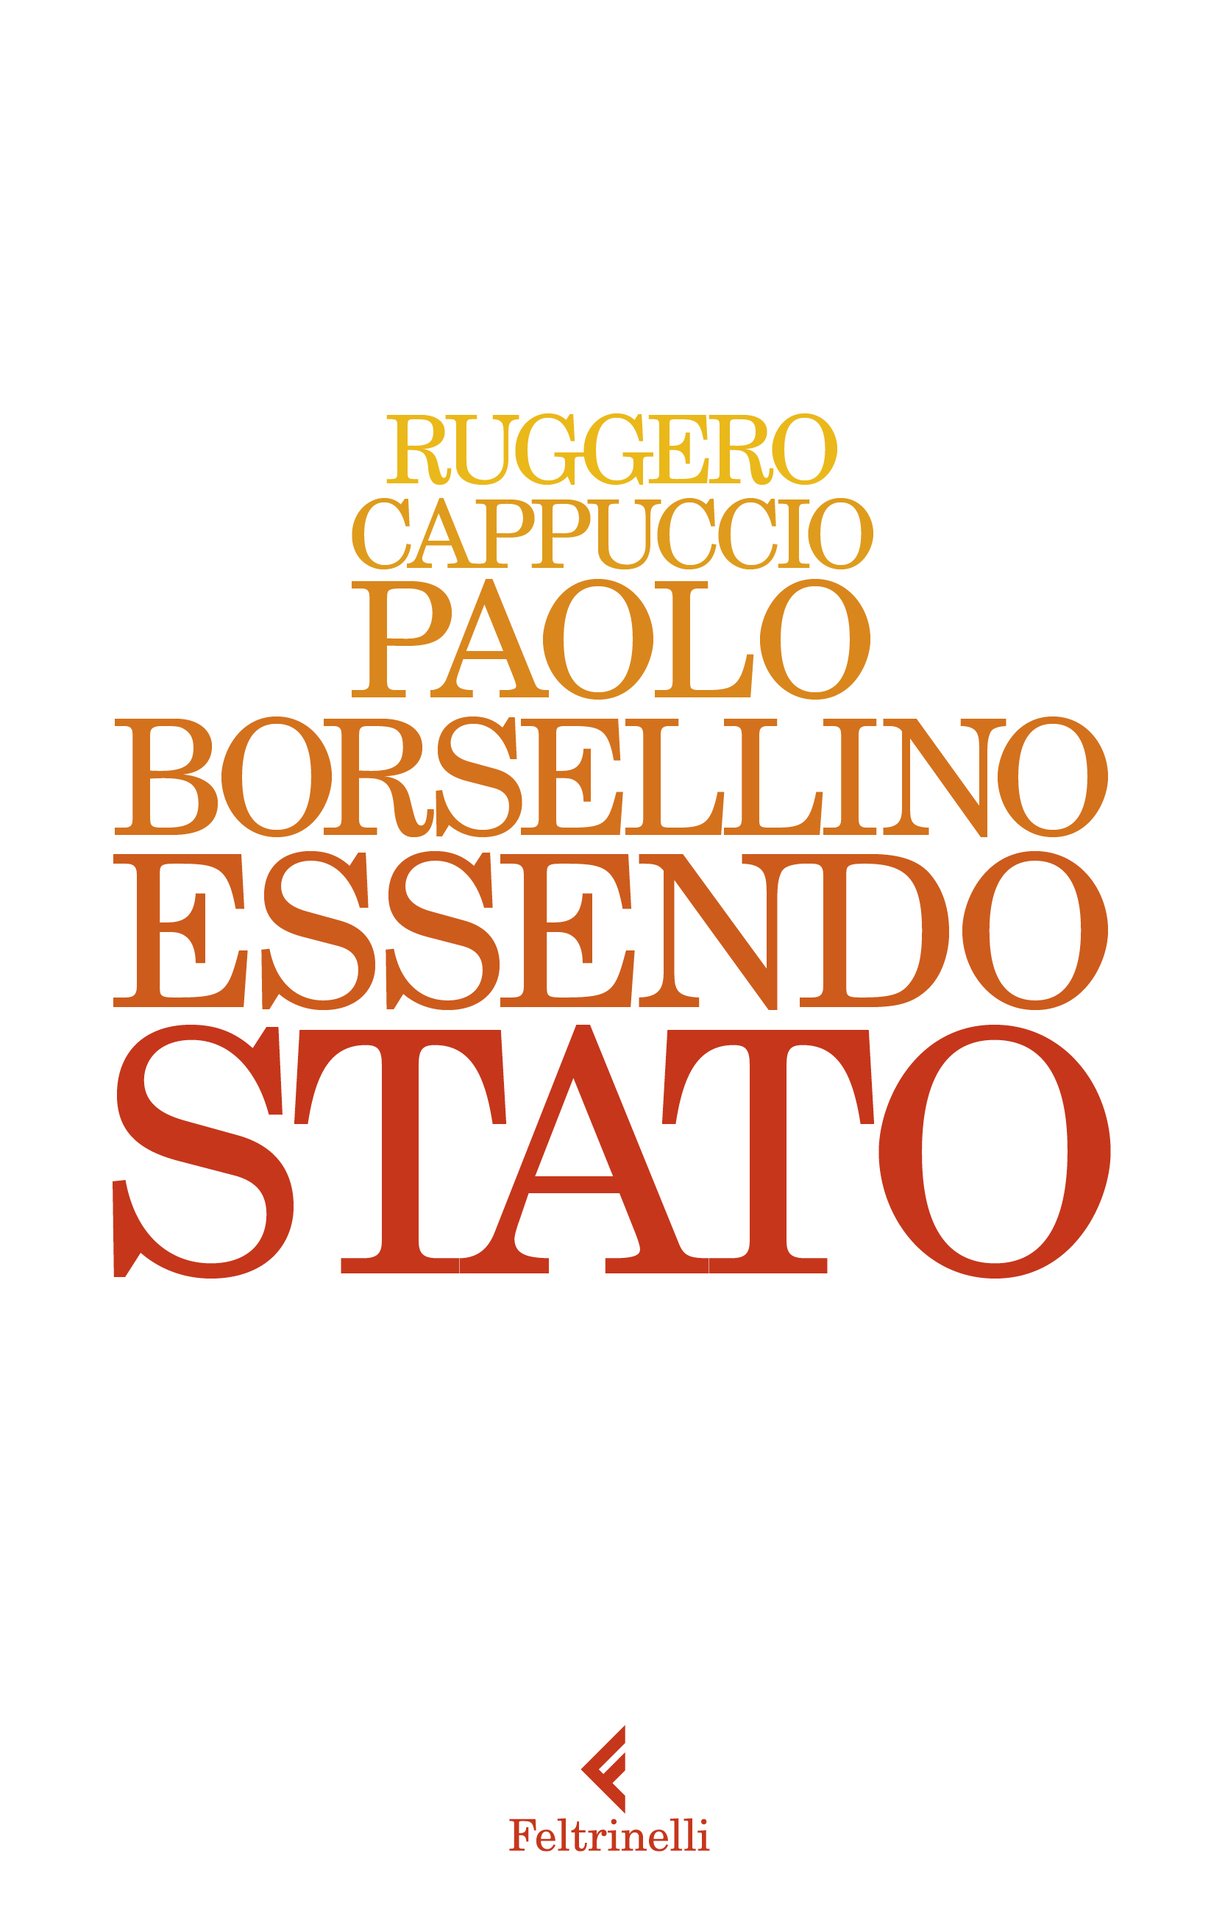 Paolo Borsellino Essendo Stato